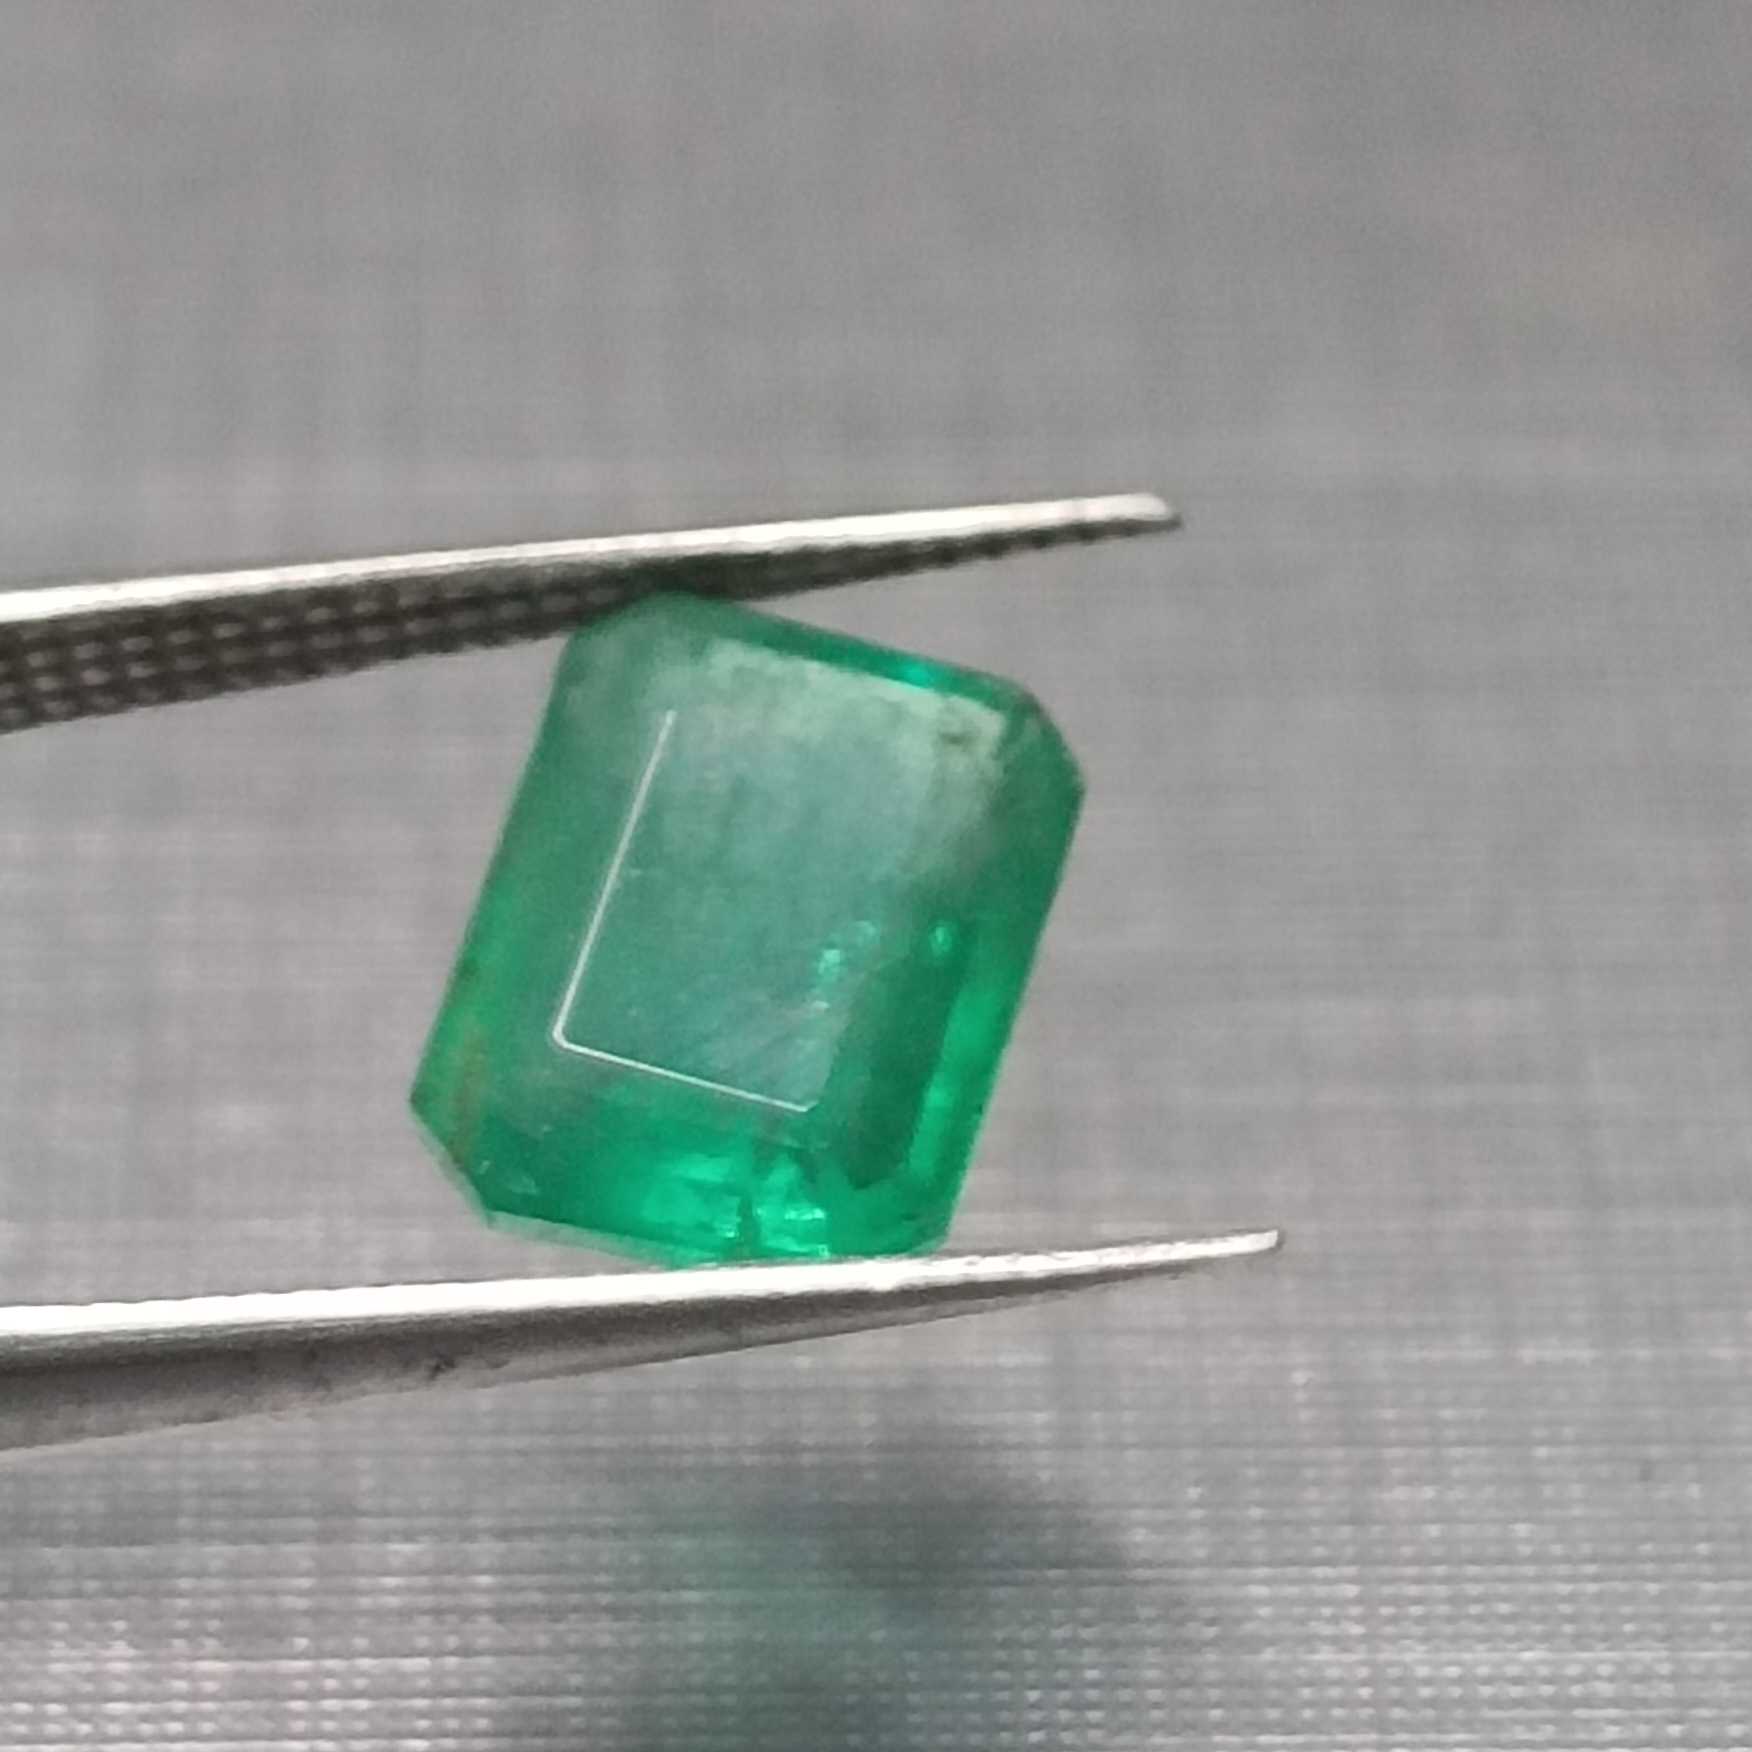 2.58ct Pakistan green color emerald cut emerald